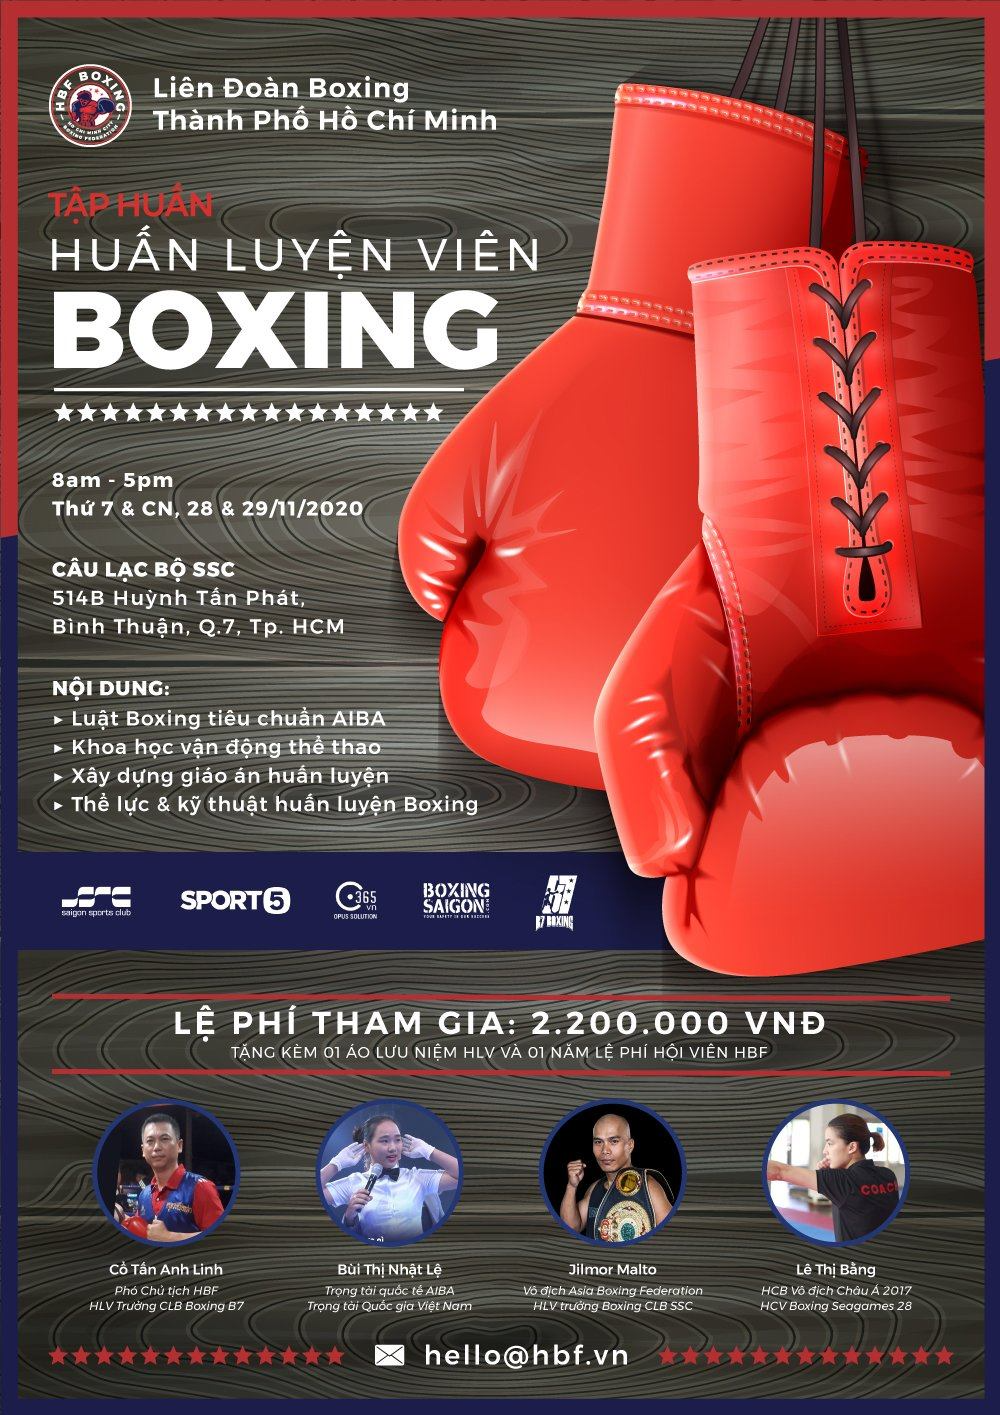 Liên đoàn Boxing TP.HCM HBF tiếp tục mở lớp tập huấn HLV Boxing phong trào - Tin vui cho người muốn khởi nghiệp với Boxing - Ảnh 1.